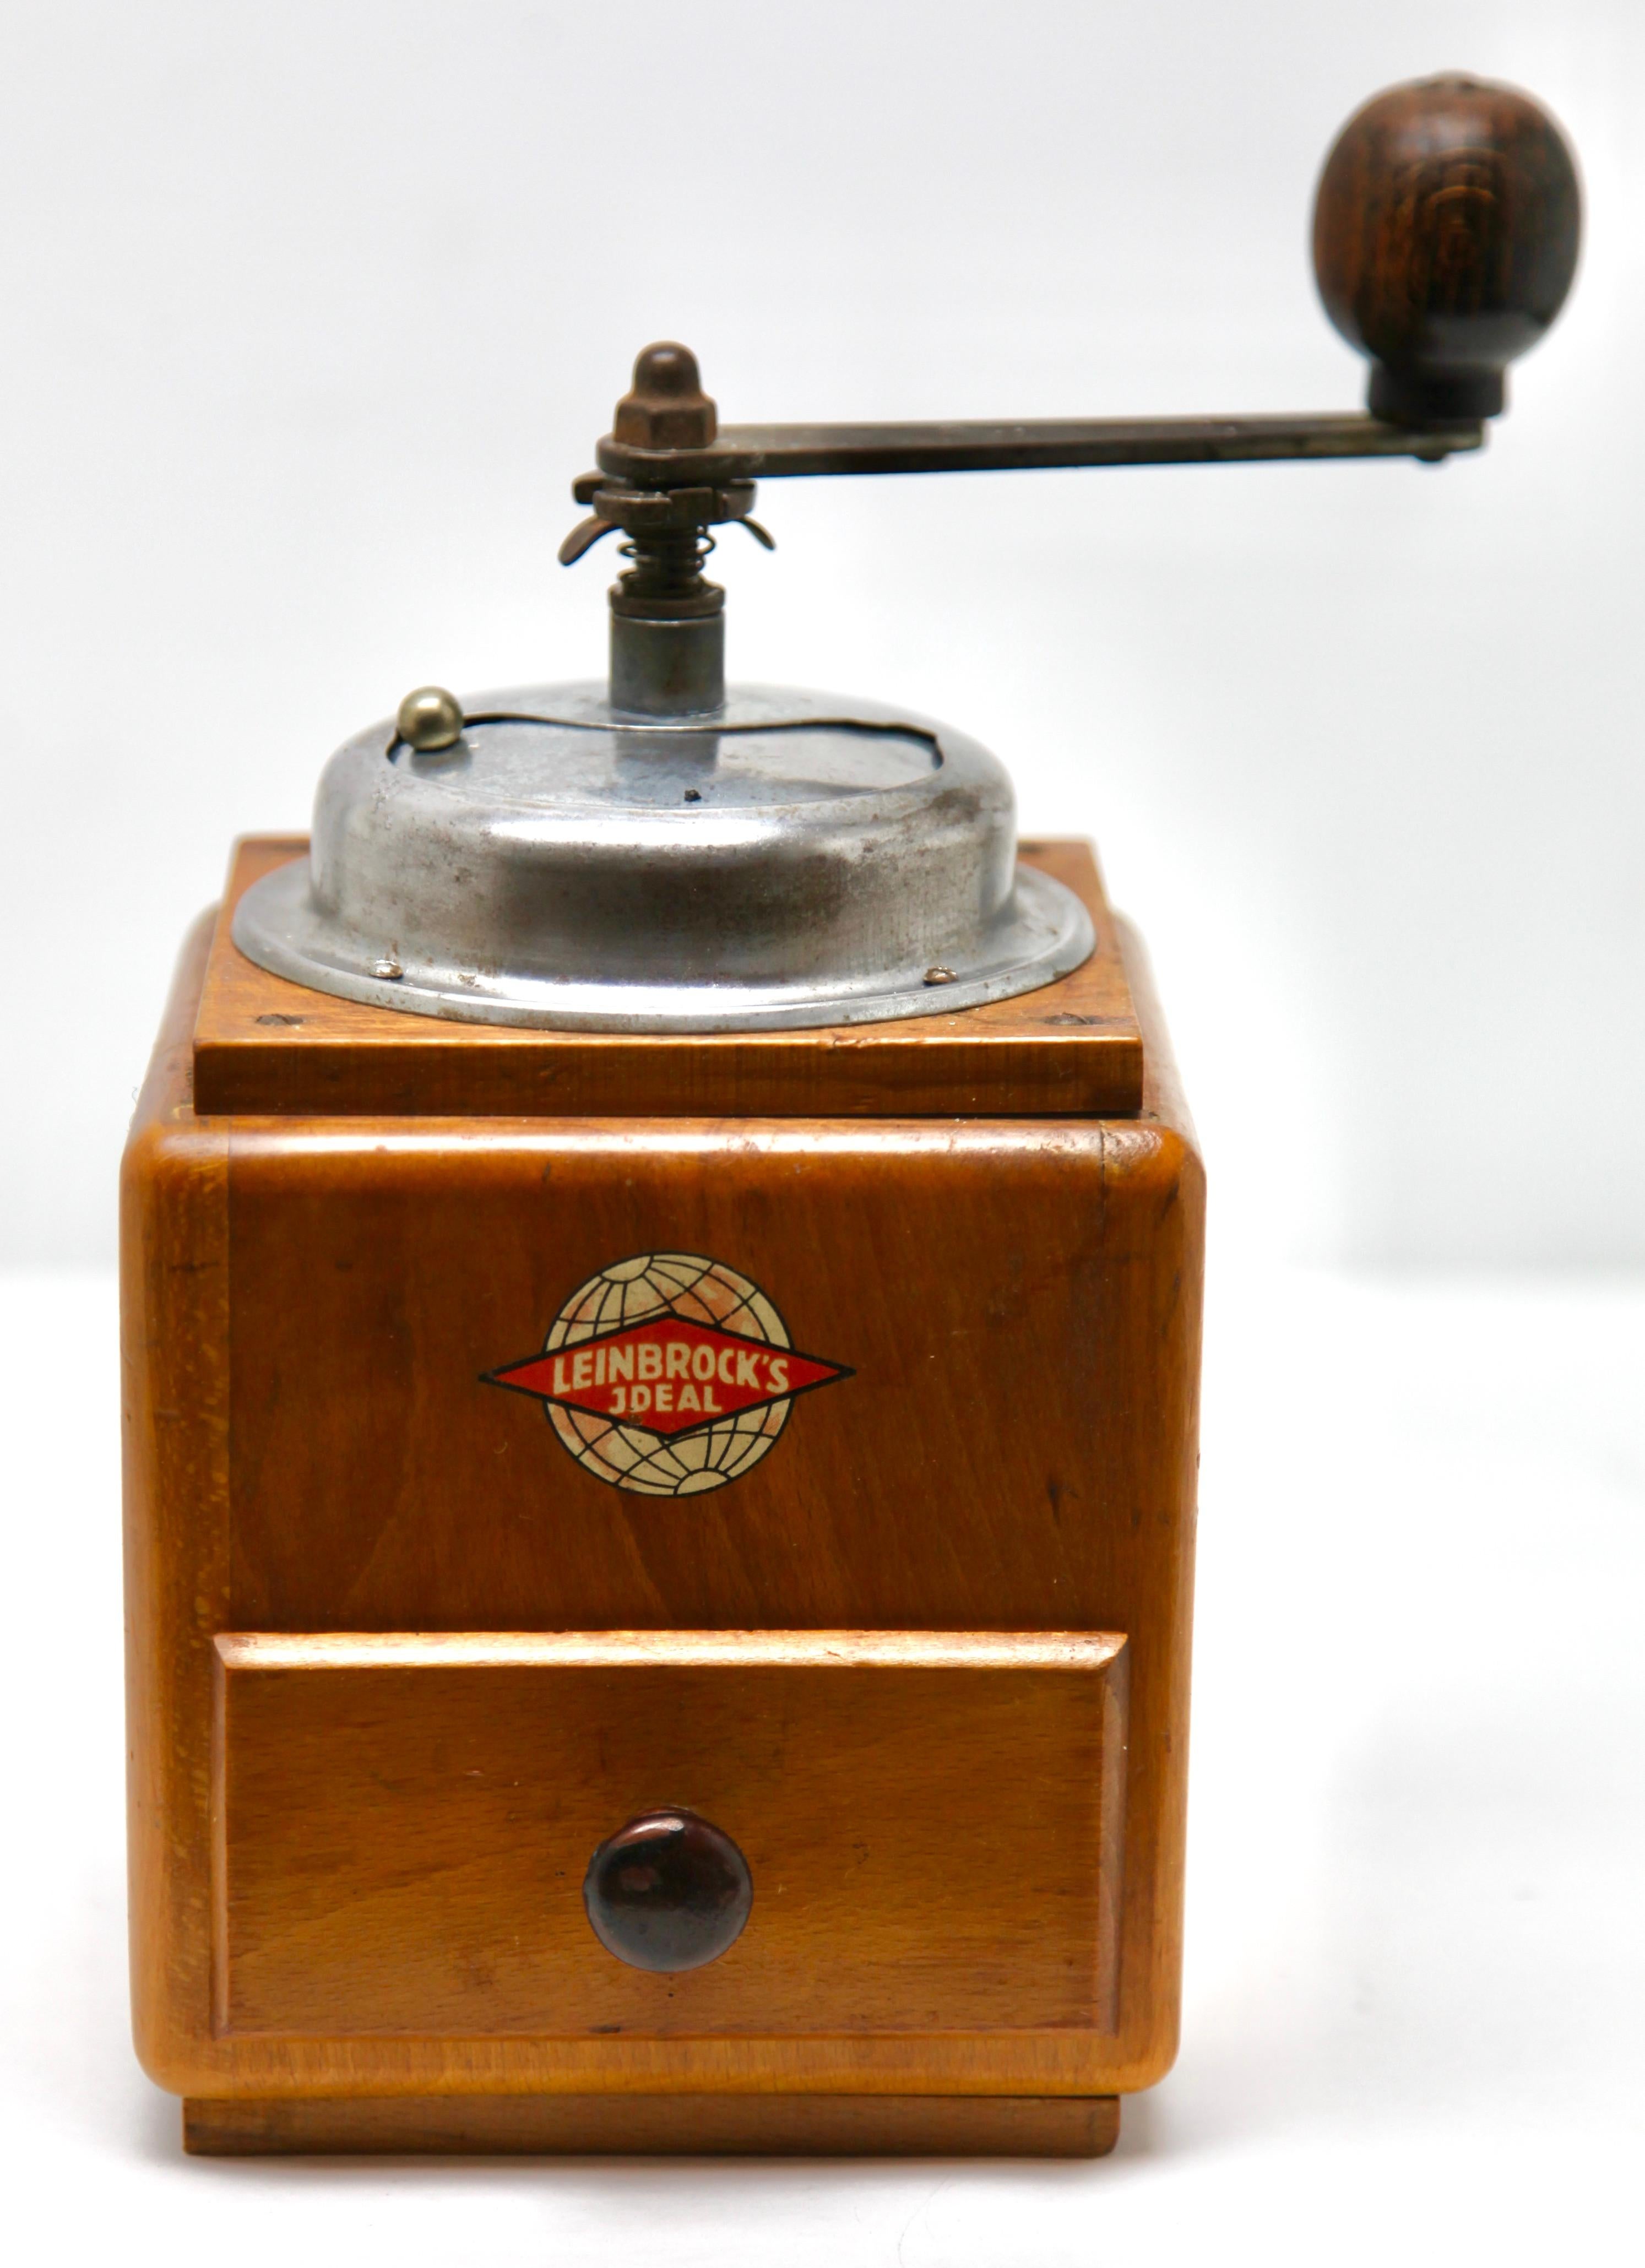 leinbrock coffee grinder